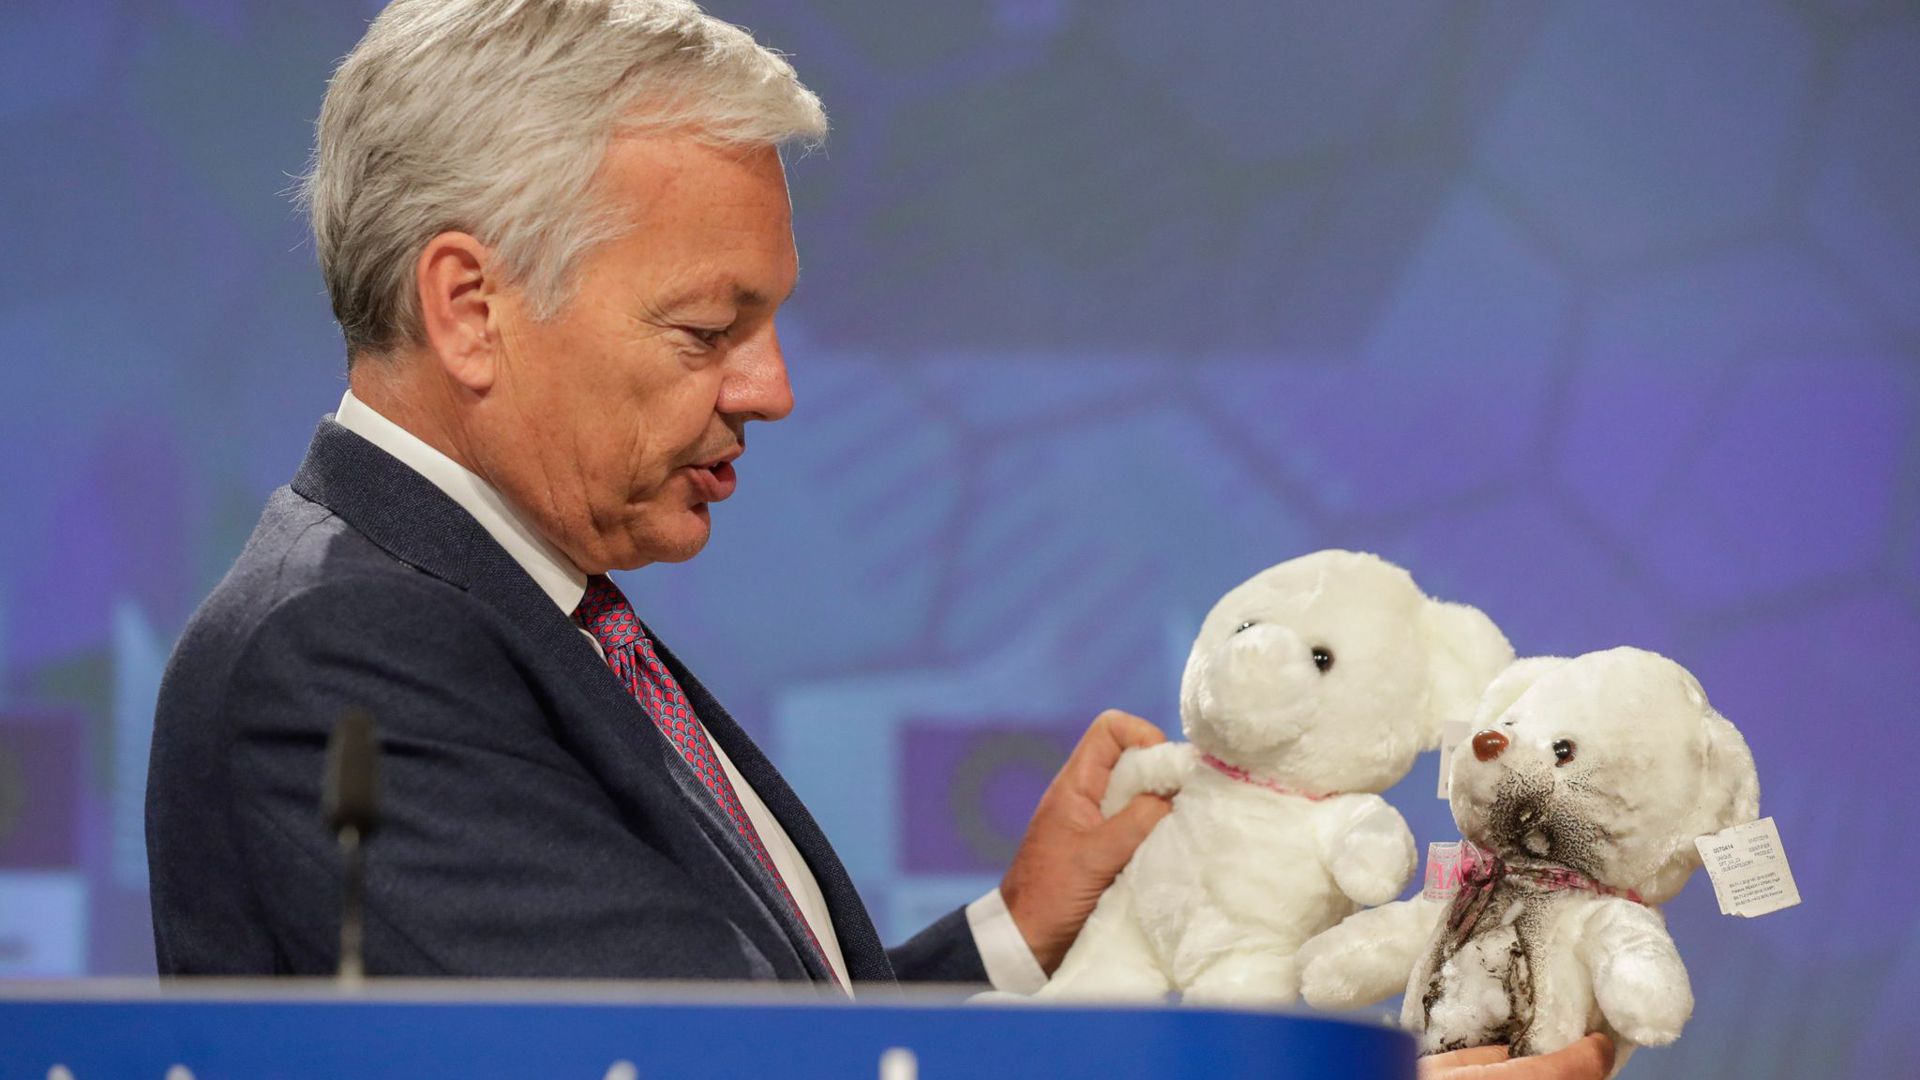 Didier Reynders, EU-Kommissar für Justiz und Rechtsstaatlichkeit, hält während einer Pressekonferenz Teddybären in der Hand.